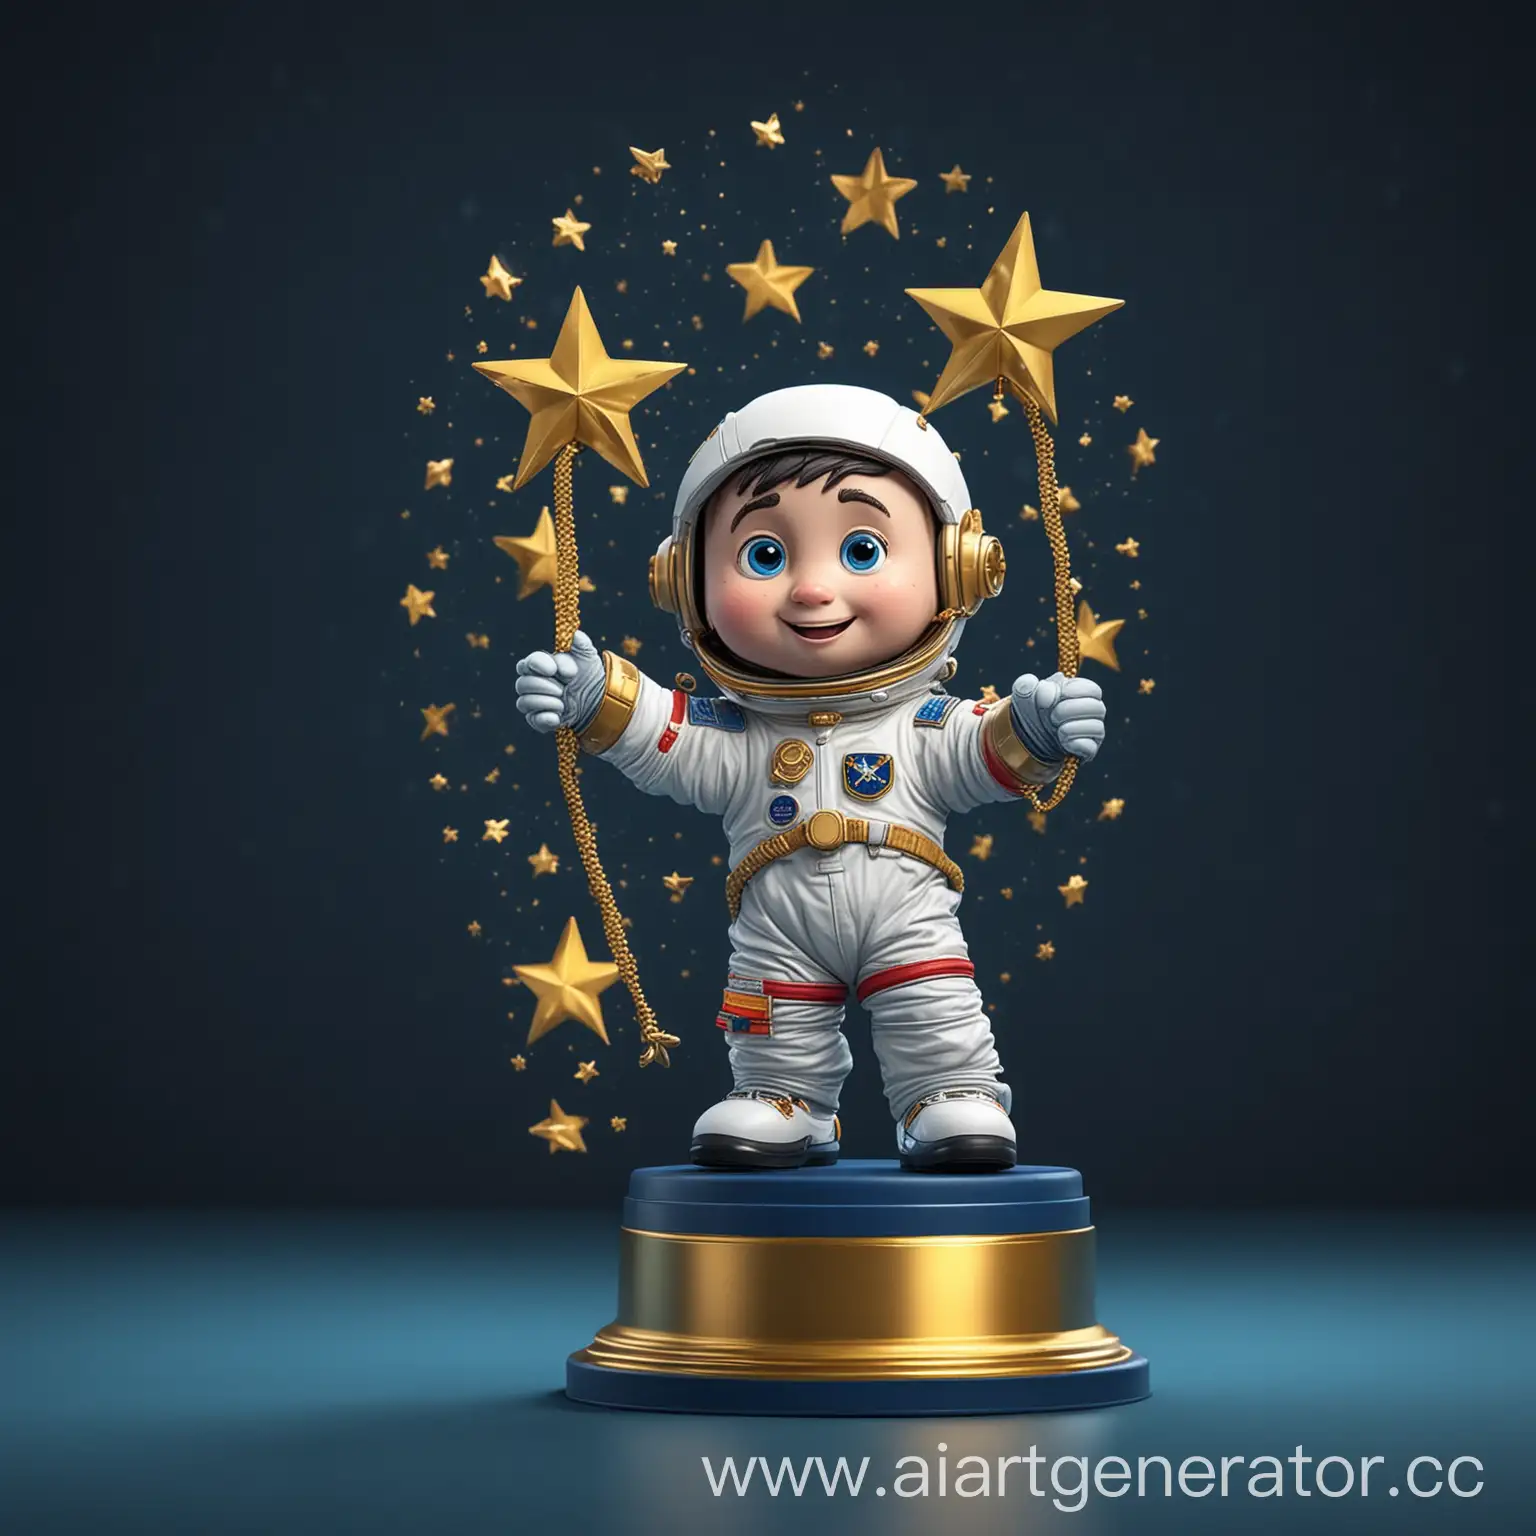 на темно-синем фоне маленький смешной забавный мультяшный космонавт получил много  наград (они висят на заднем фоне) и ему подарили награду - статуетку золотую звезду, аналог оскара